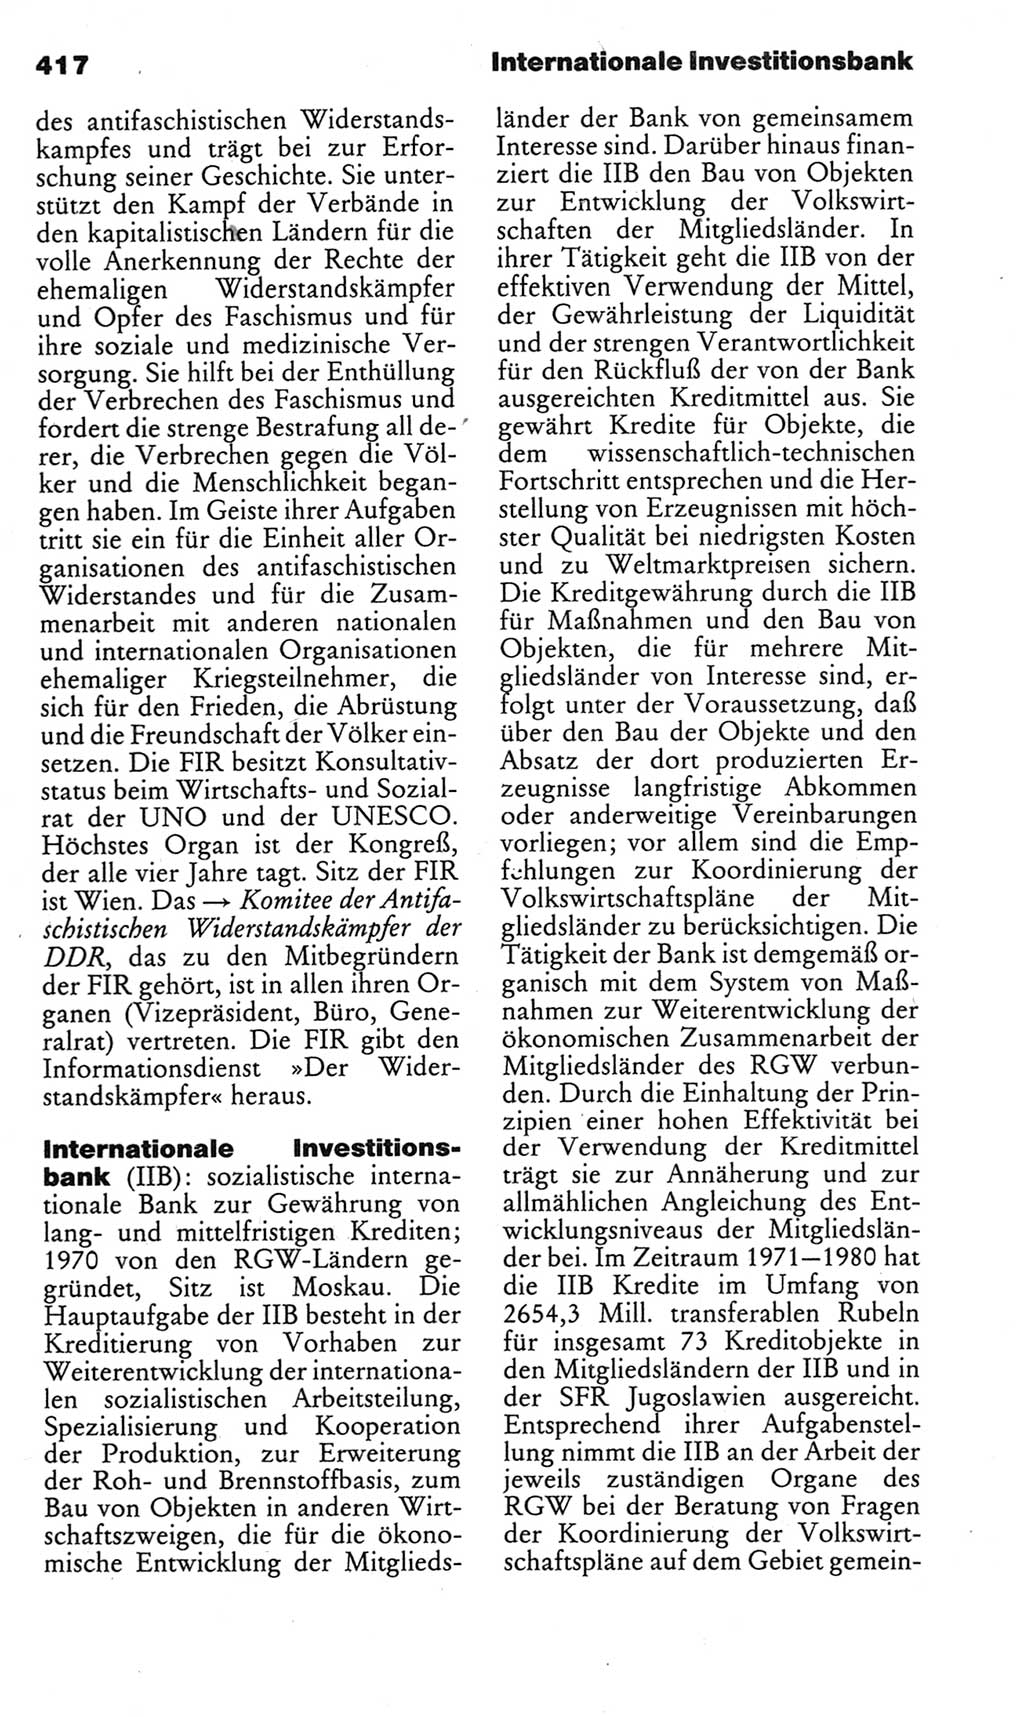 Kleines politisches Wörterbuch [Deutsche Demokratische Republik (DDR)] 1983, Seite 417 (Kl. pol. Wb. DDR 1983, S. 417)